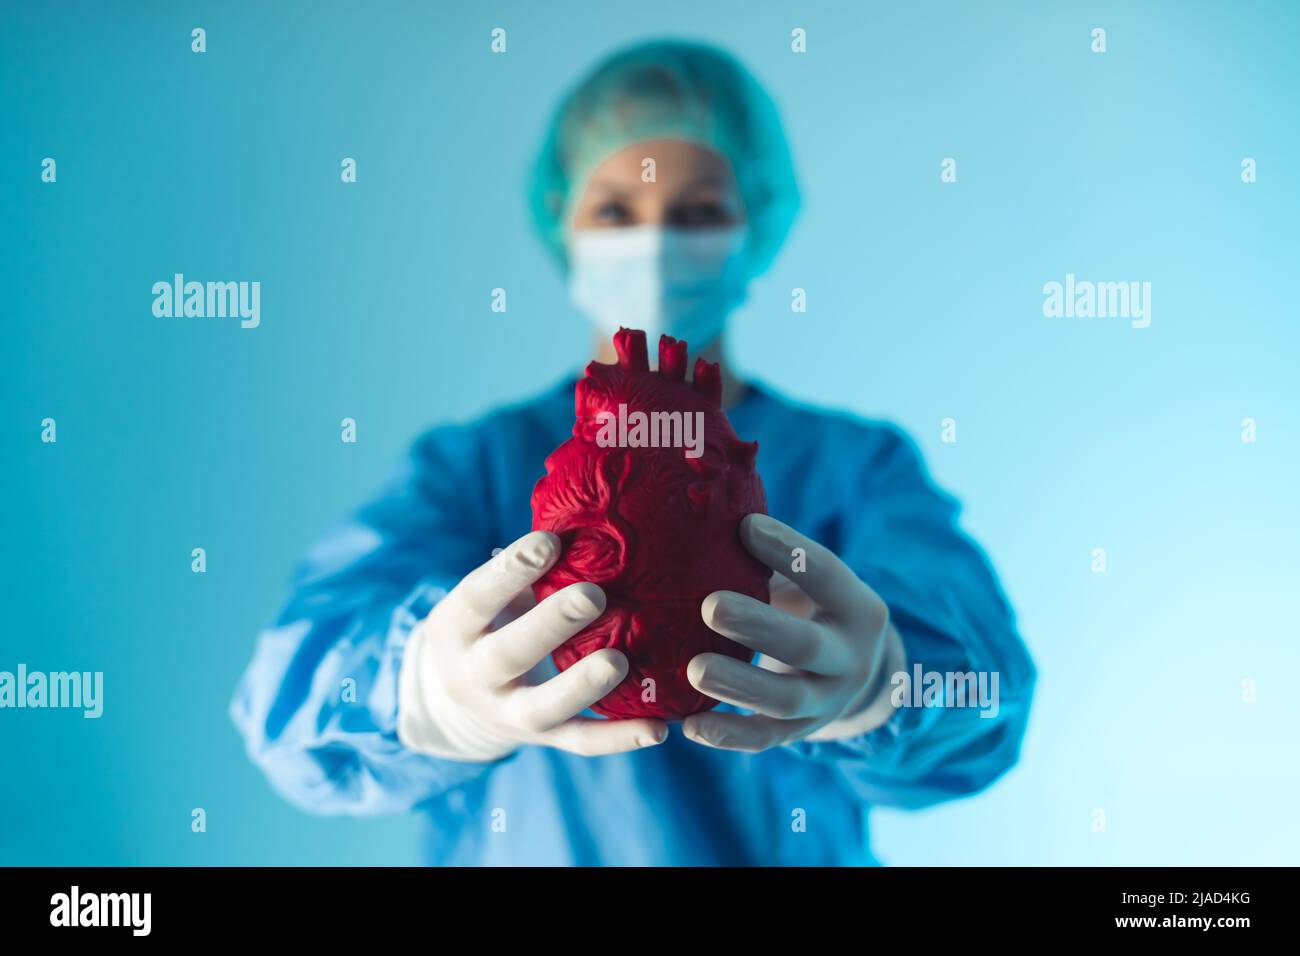 Studio medio girato su sfondo blu di una dottoressa vestita di scrub blu che regge un cuore artificiale rosso scuro. Mettere a fuoco il primo piano. Foto di alta qualità Foto Stock